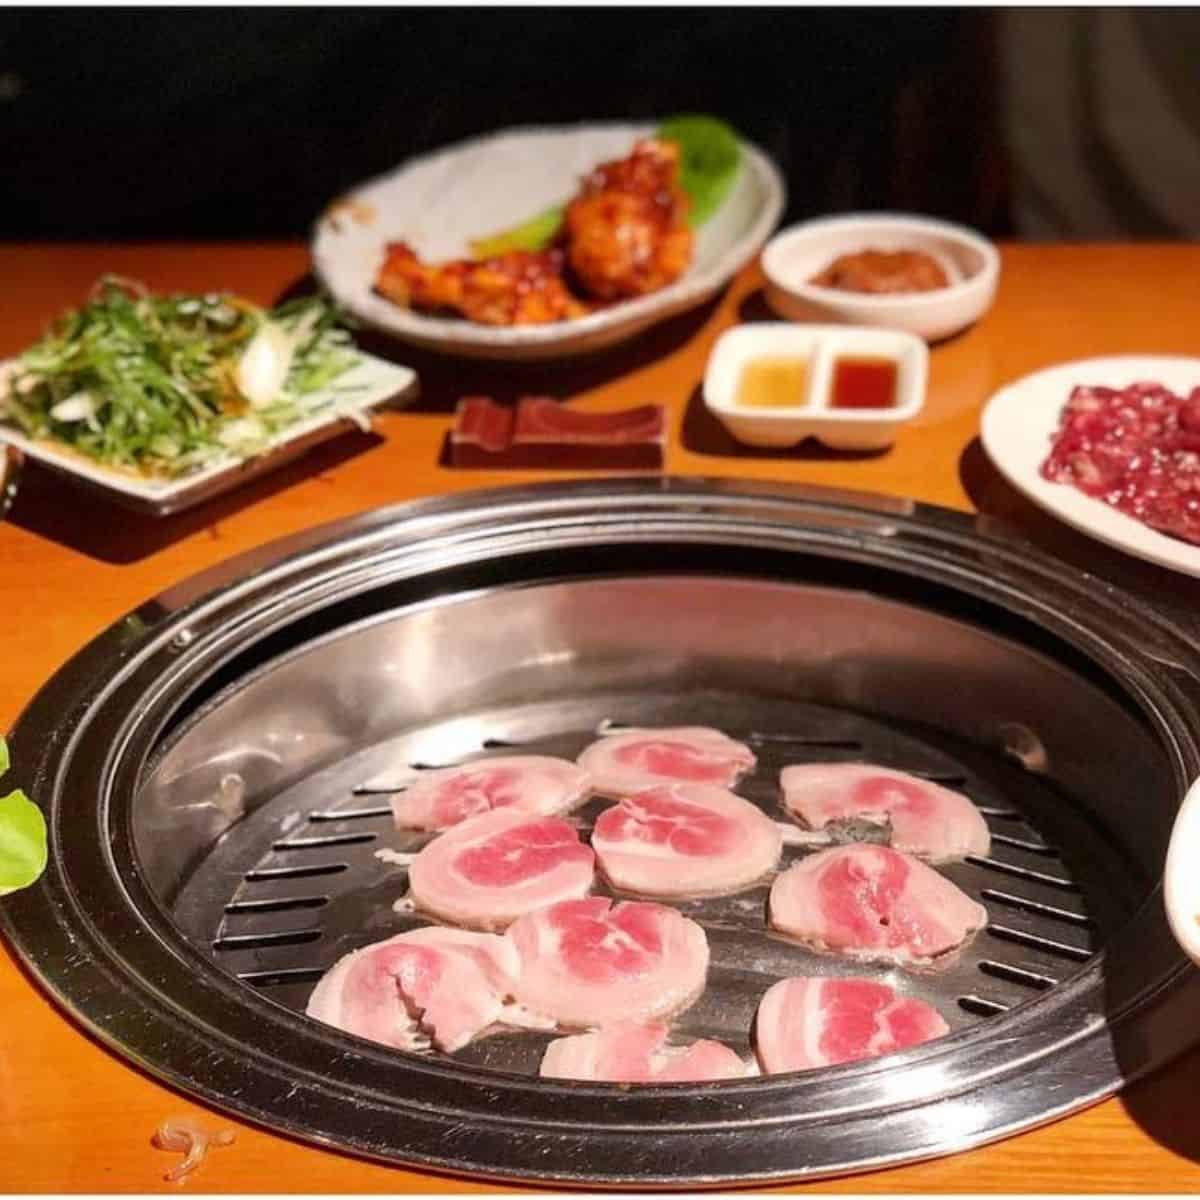 Asadal pork belly grill platter